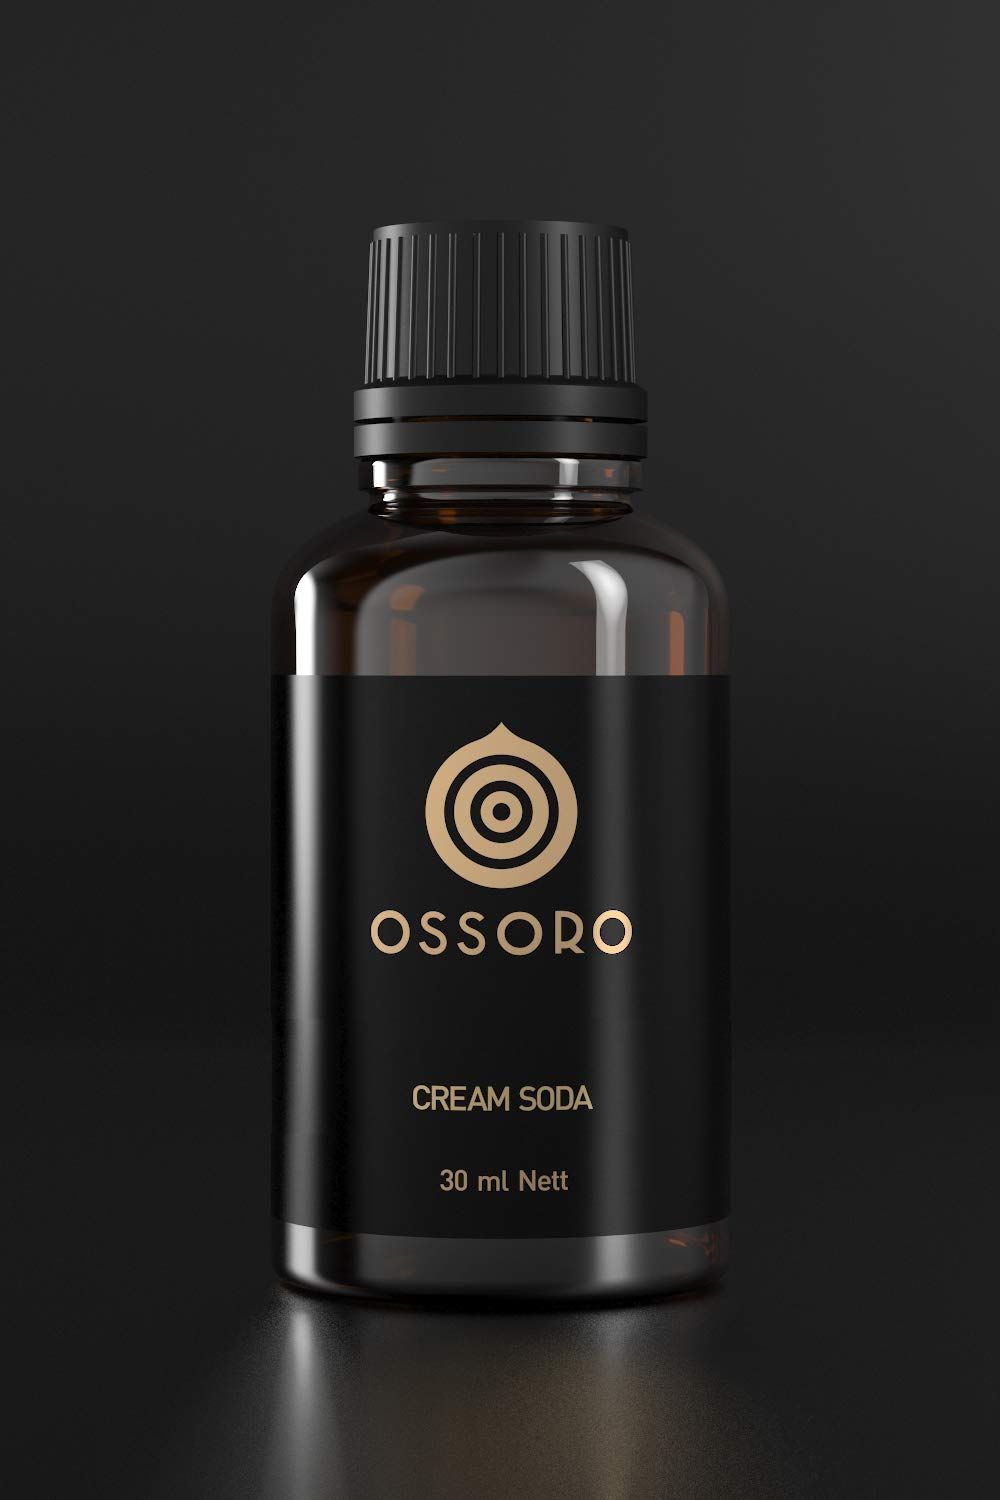 Ossoro Cream Soda Image